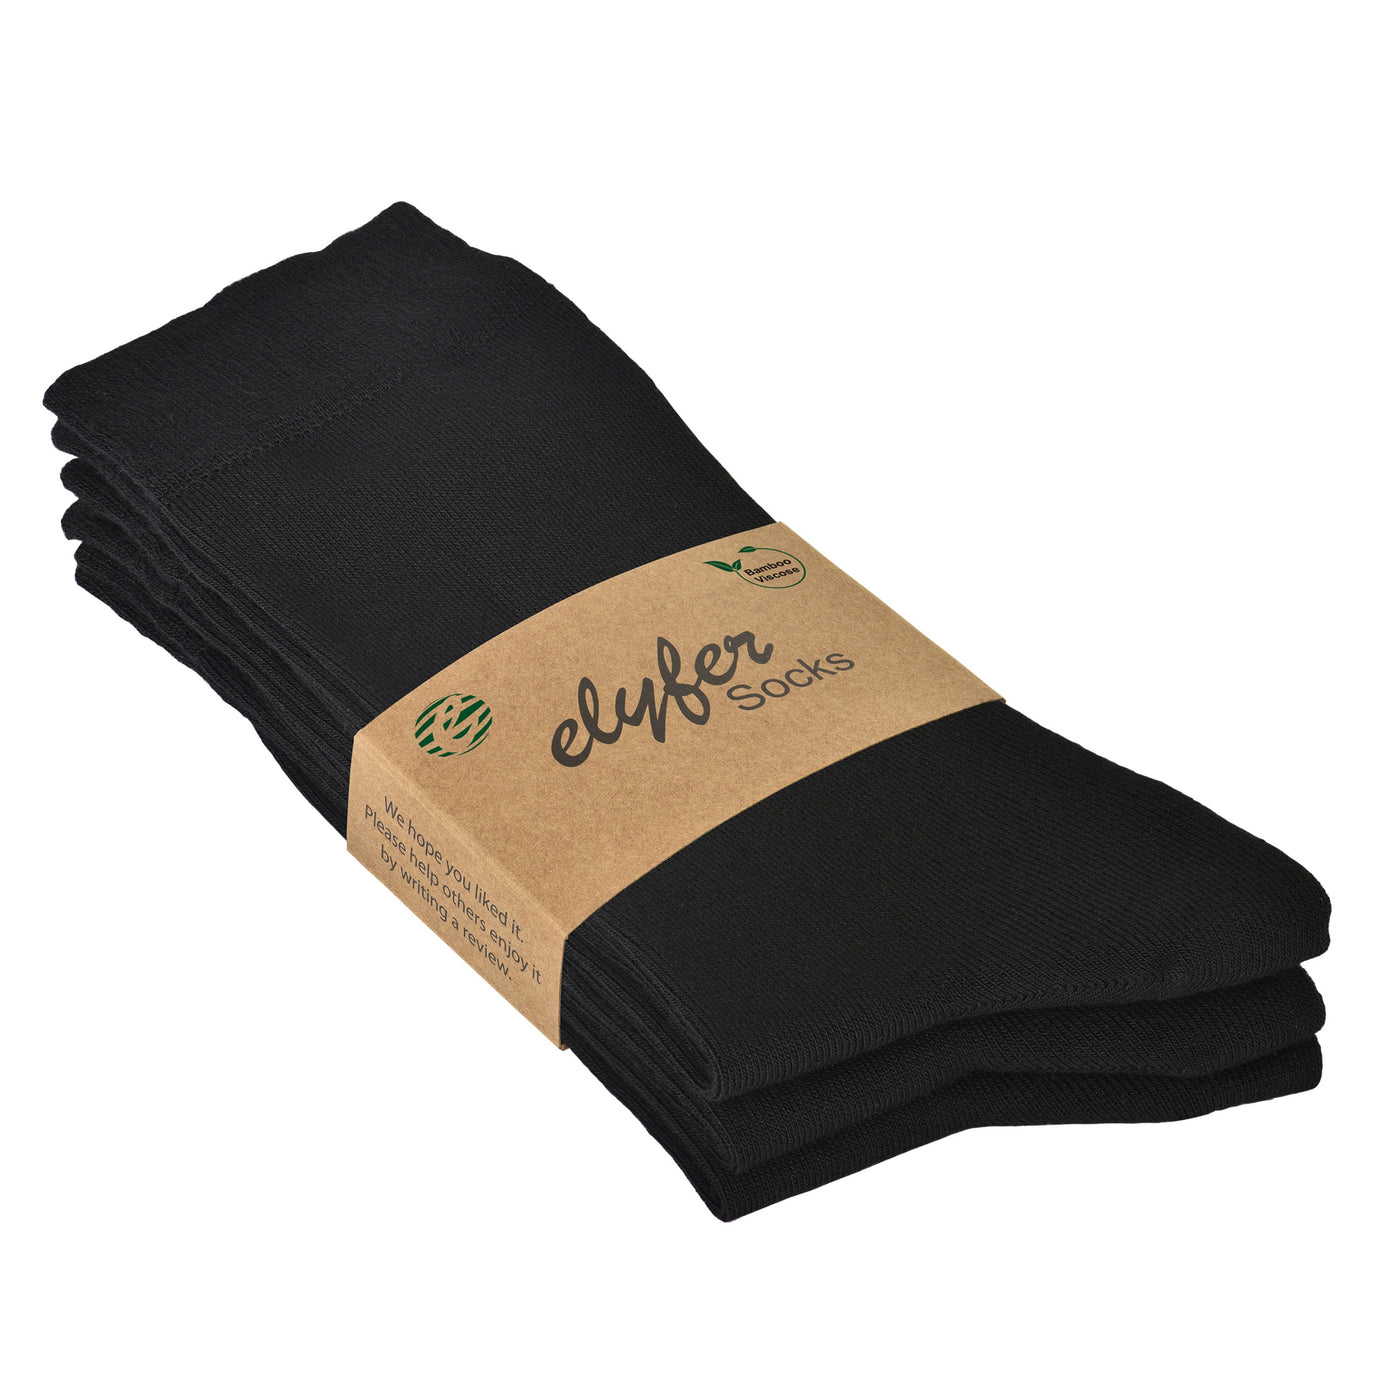 1 Pair Women's Above Ankle Bamboo Socks - ELYFER #color_black